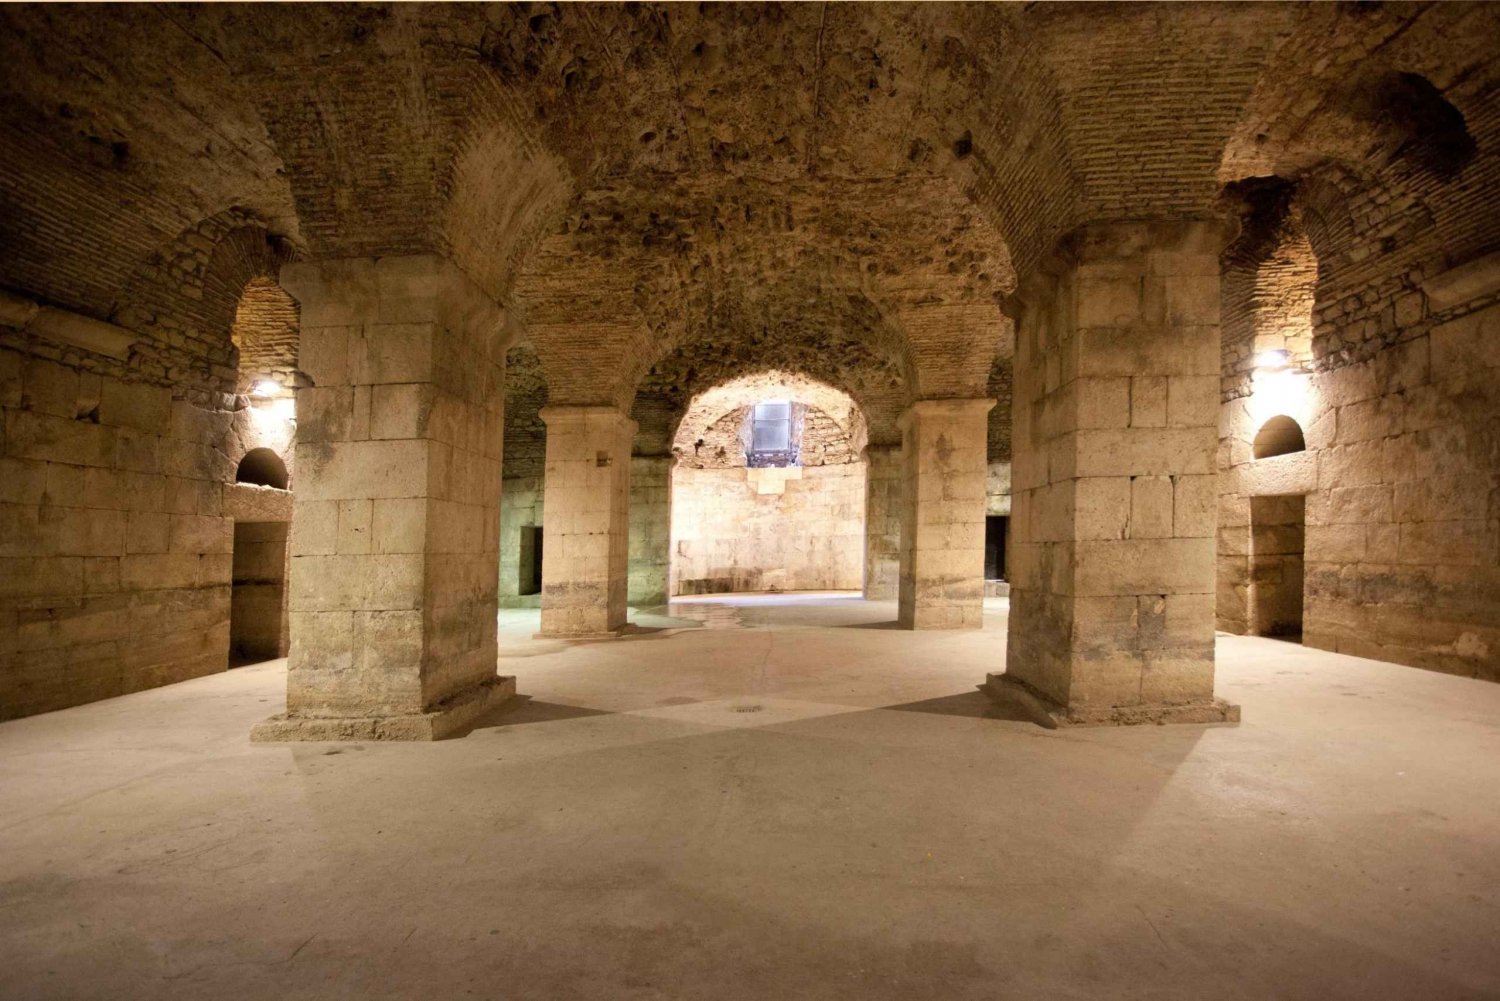 Dela: Inträdesbiljett till källarna i Diocletianus palatset